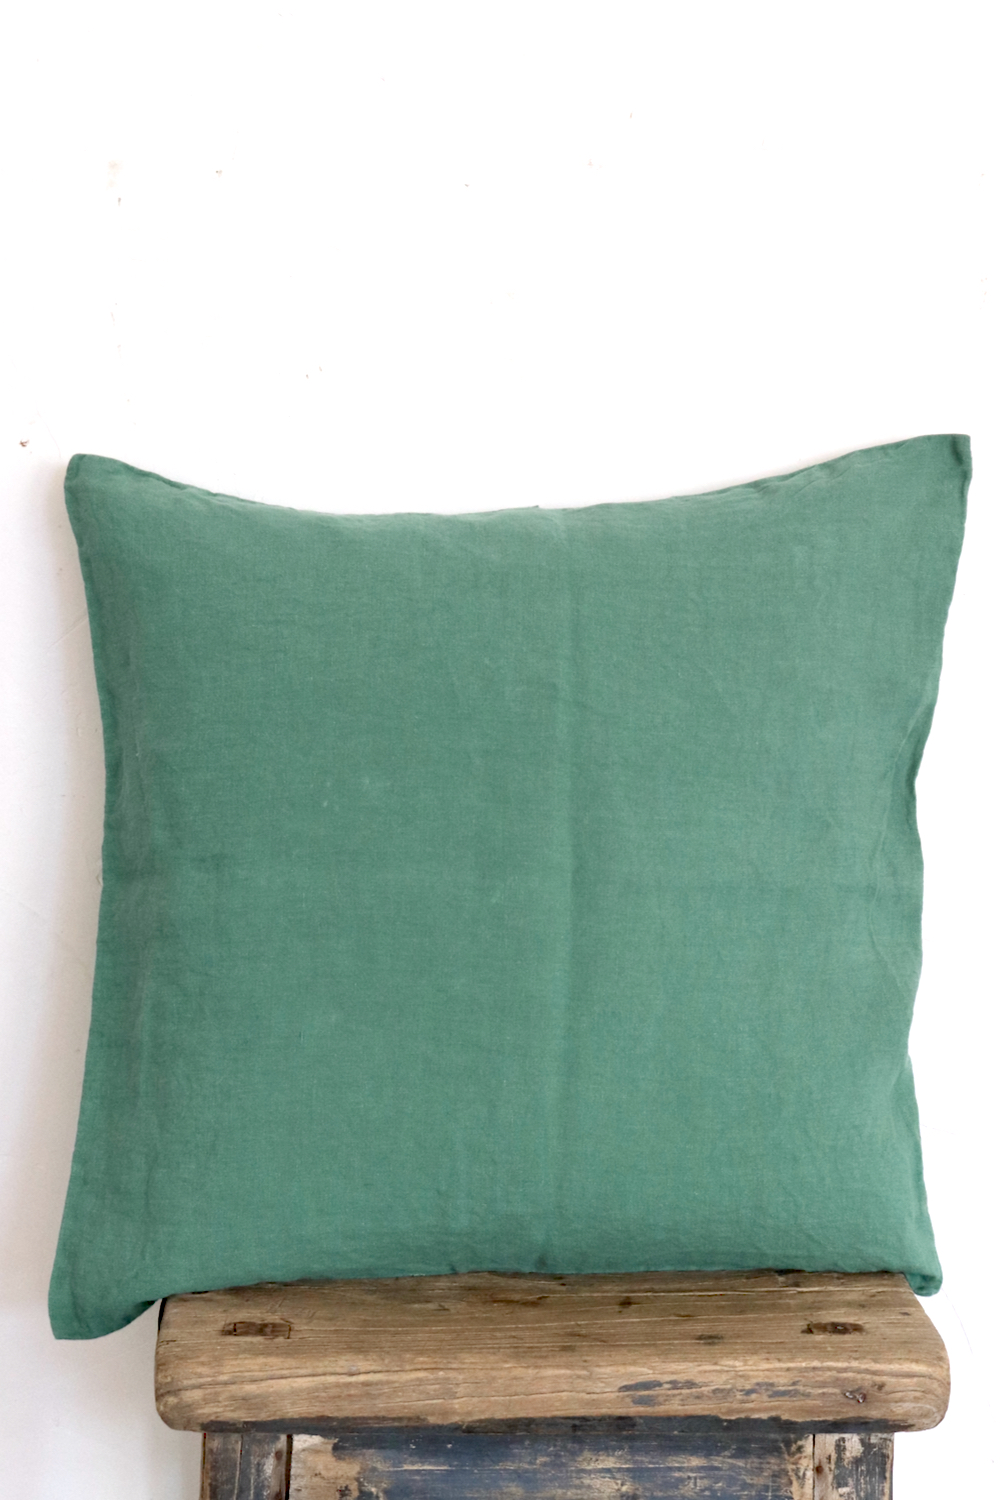 Kissenbezug Knitterleinen grün 50x50